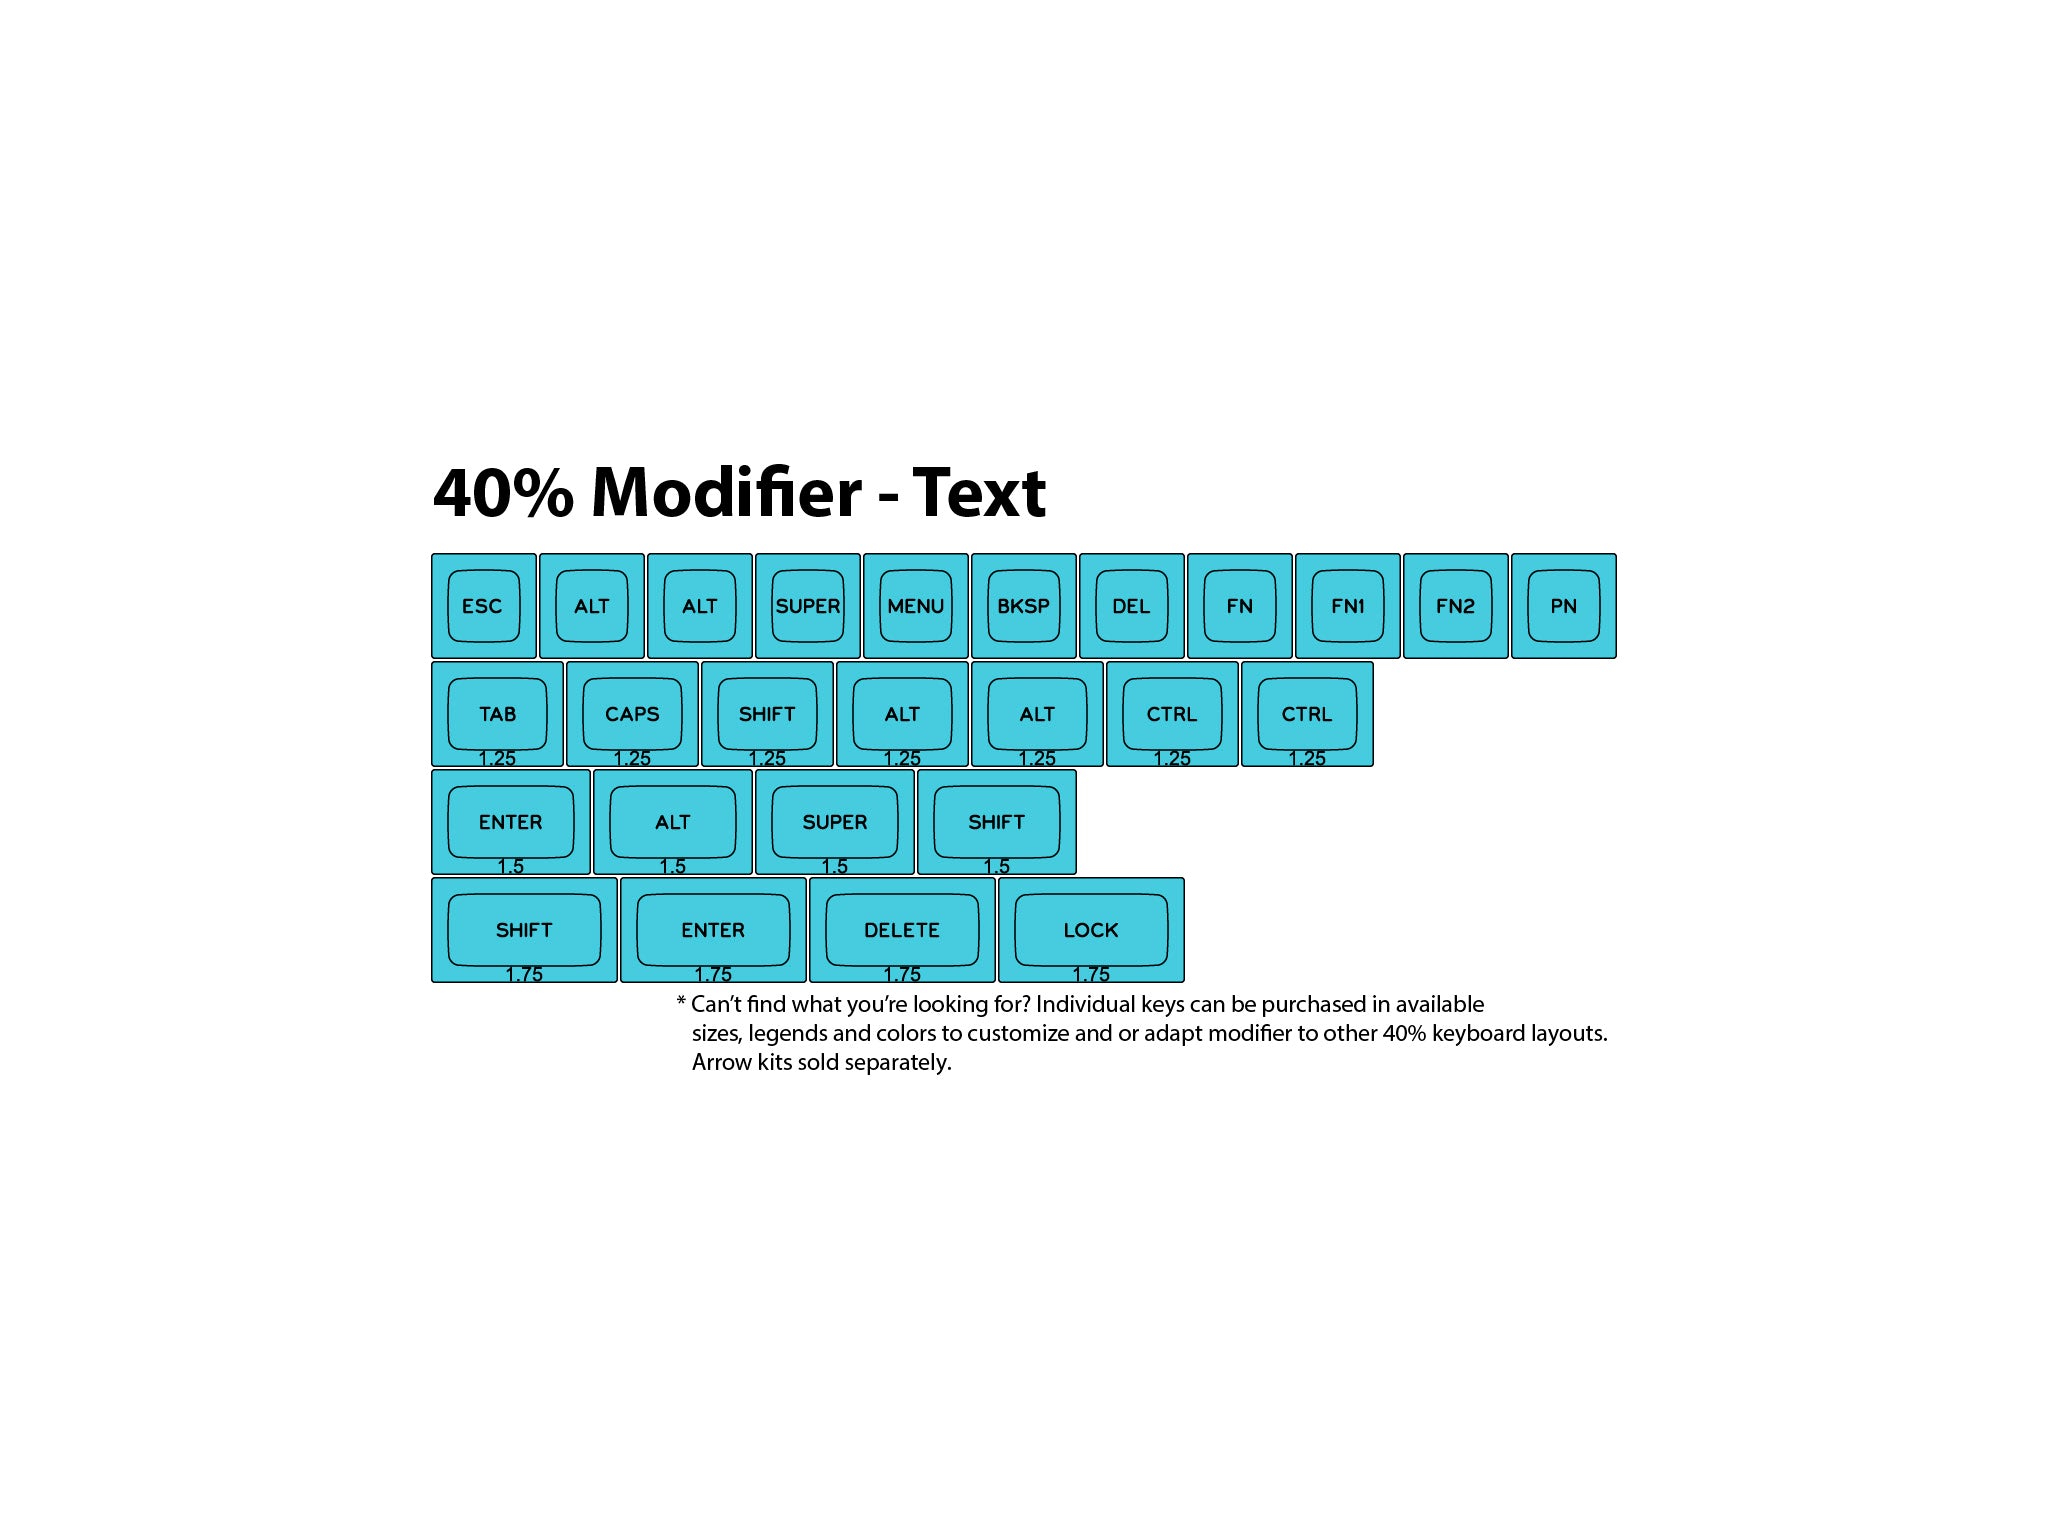 40% Keyboard Modifiers